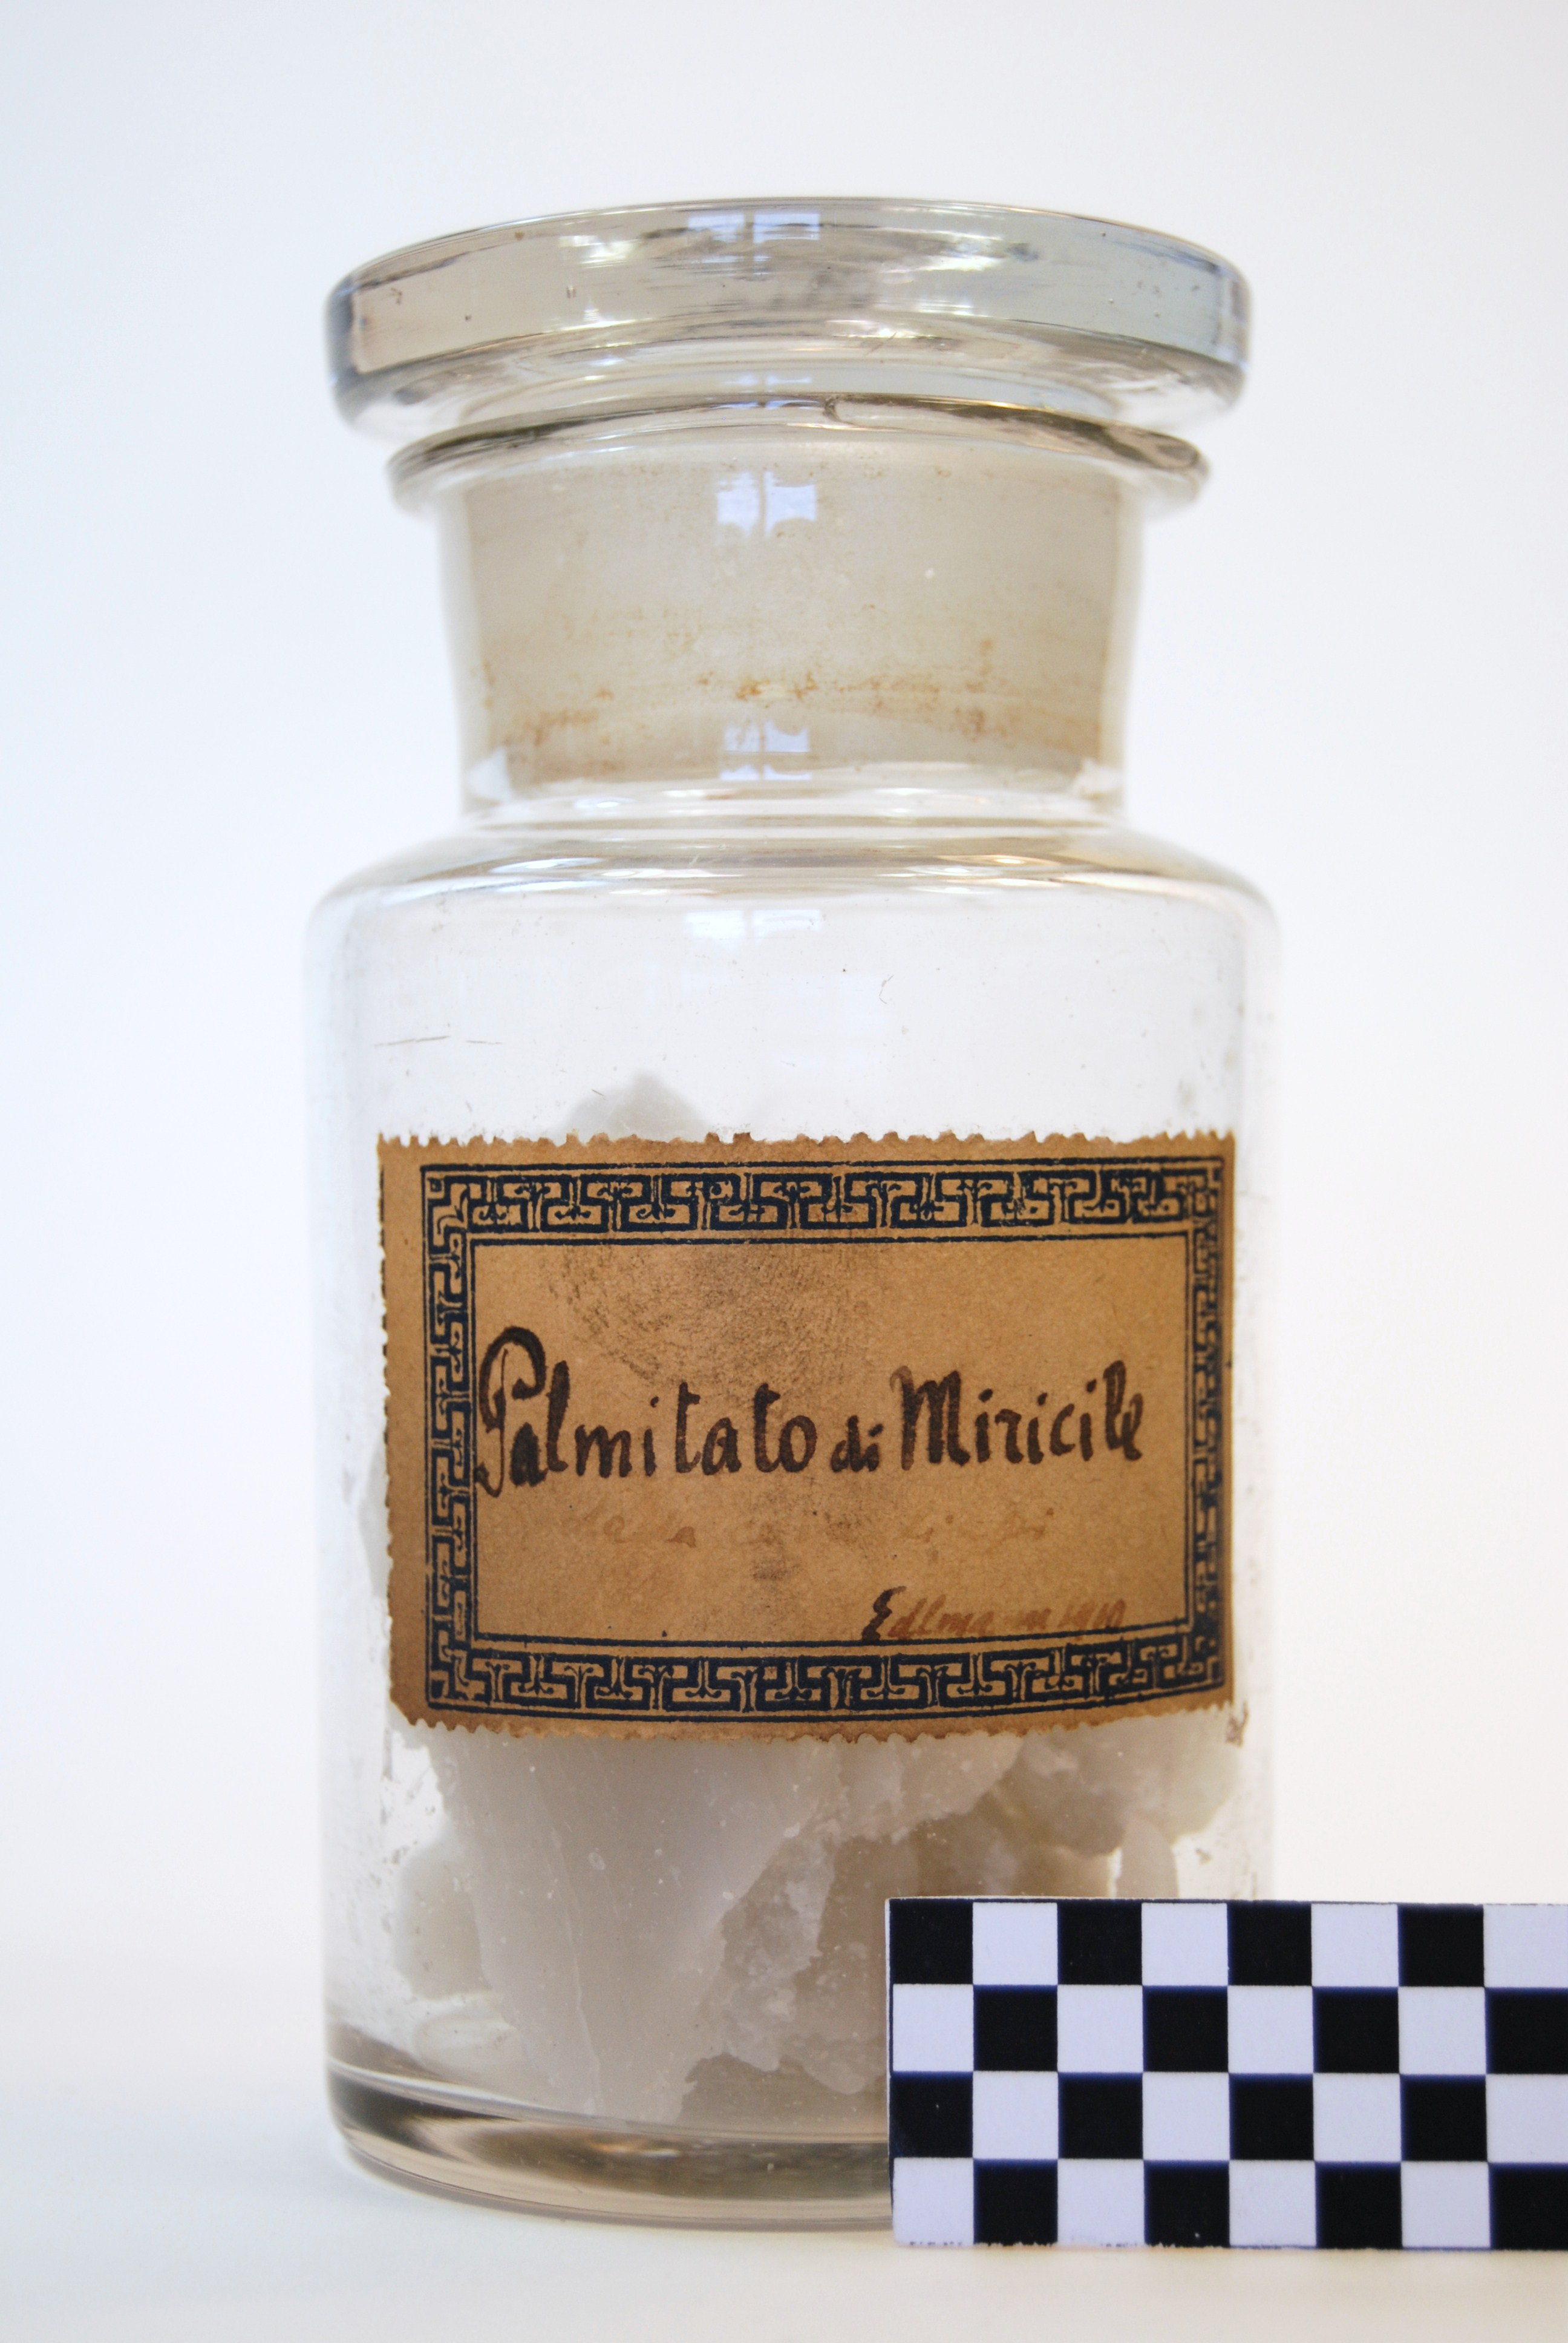 palmitato di miricile (prodotto chimico, di sintesi) di Ugo Schiff (laboratorio) - scuola chimica fiorentina (metà/ inizio XIX/ XX)